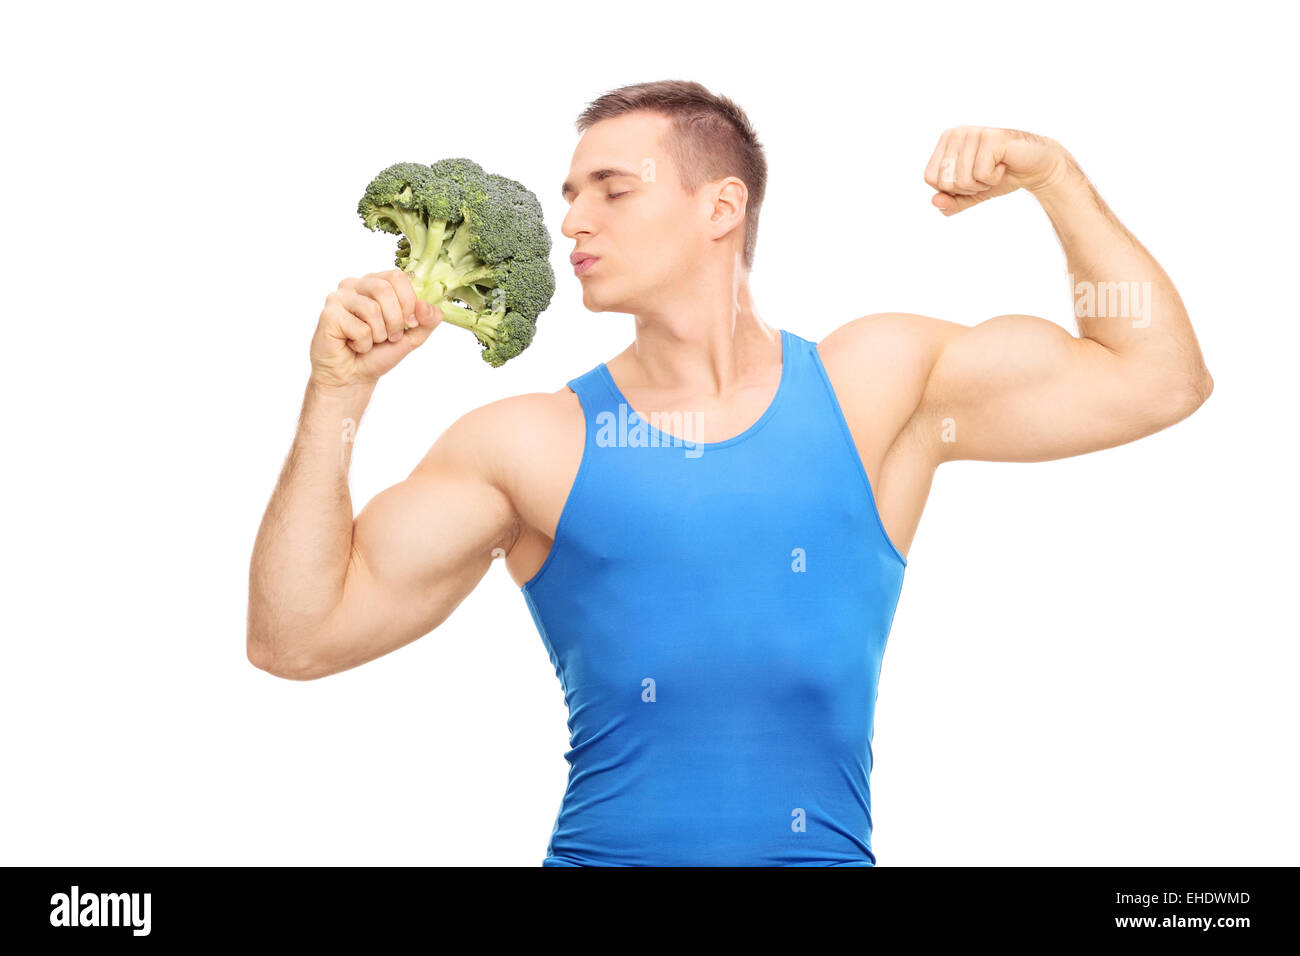 Uomo muscolare baciando un enorme pezzo di broccoli isolati su sfondo bianco Foto Stock